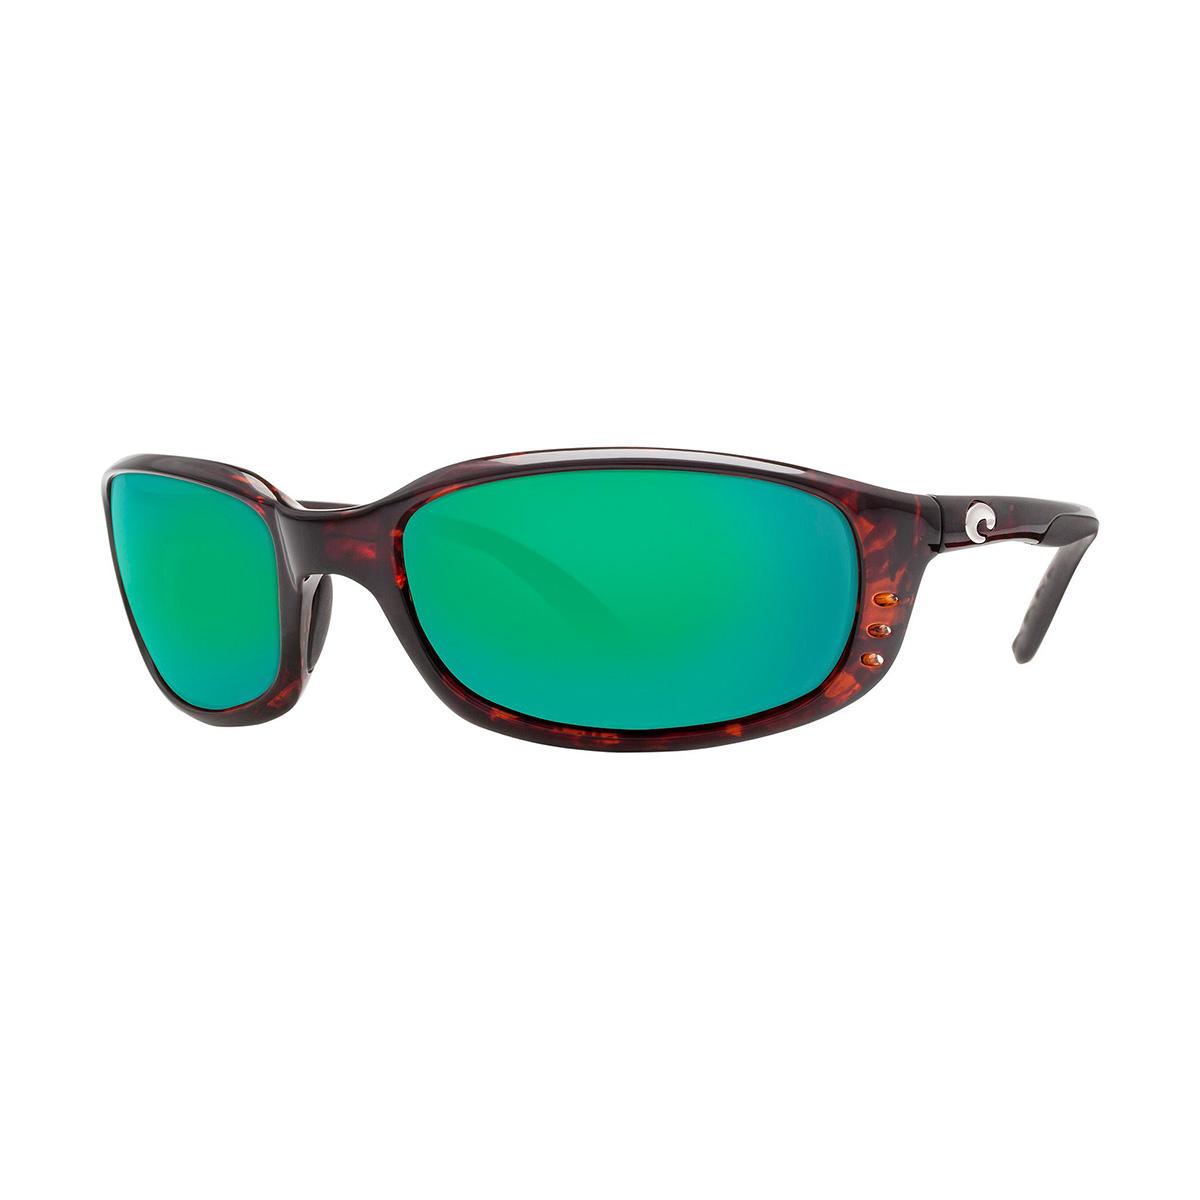  Brine 580p Sunglasses - Polarized Plastic